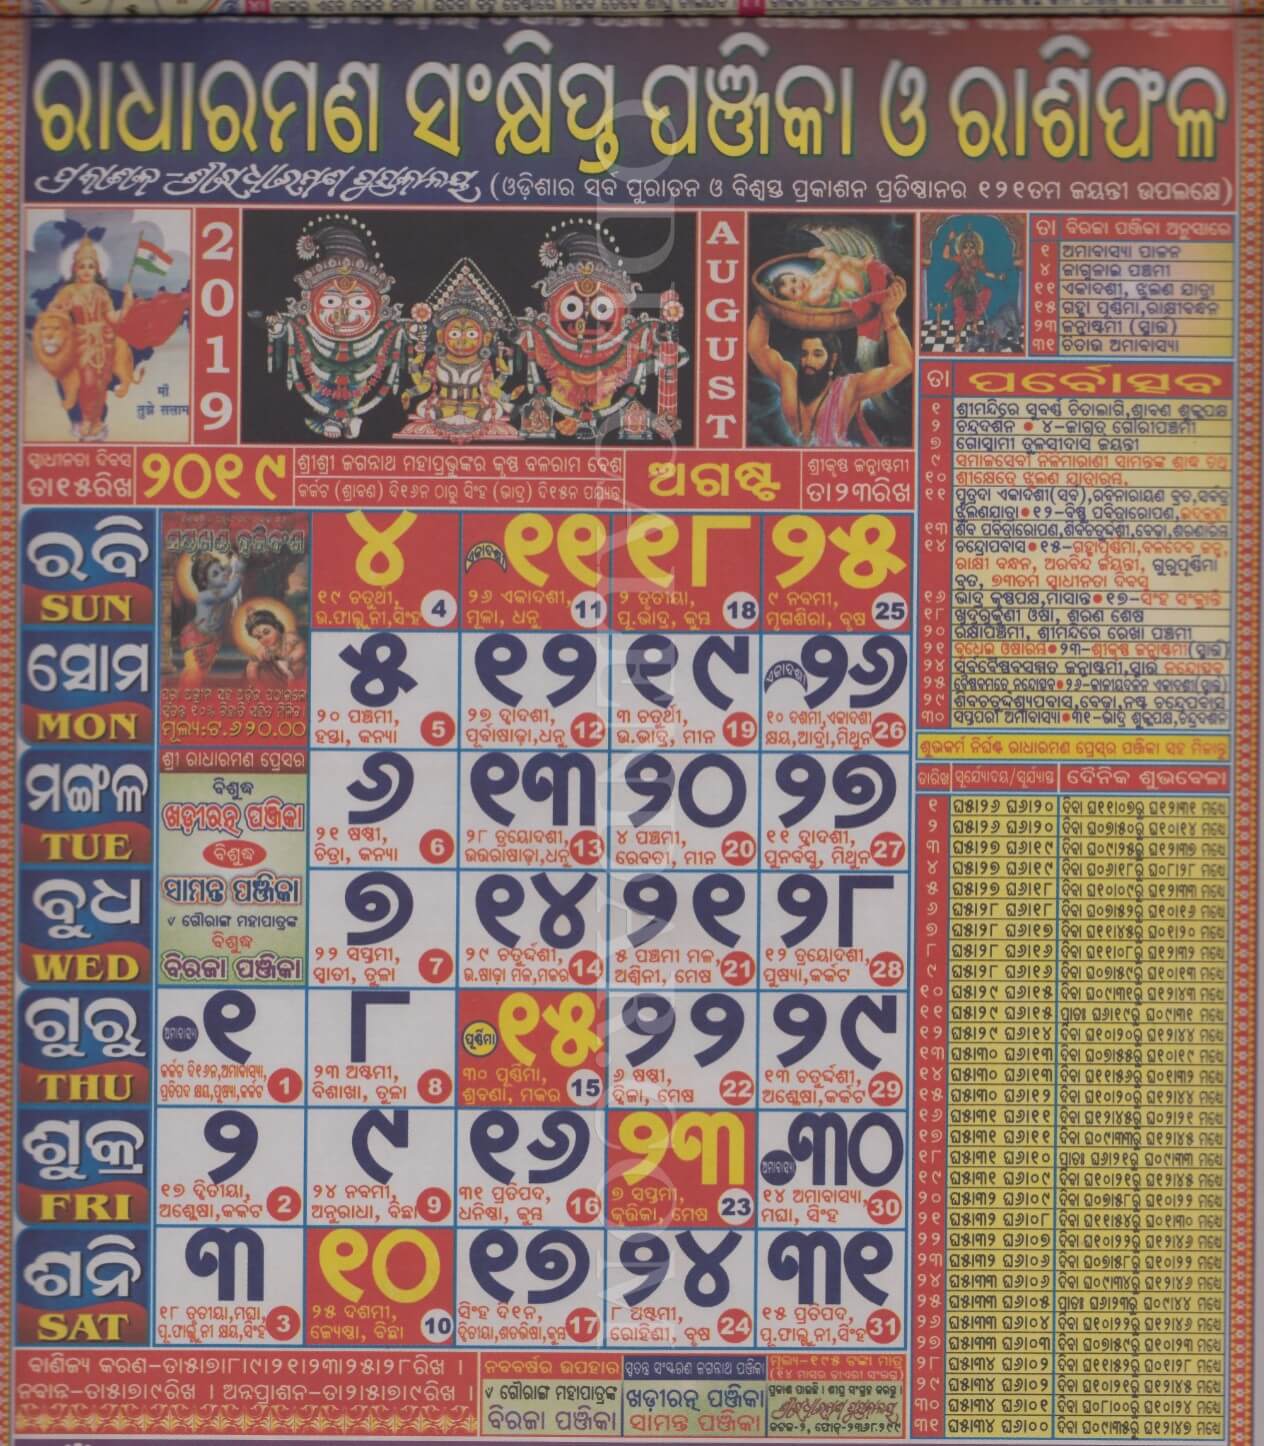 Radharaman Calendar 2019 August